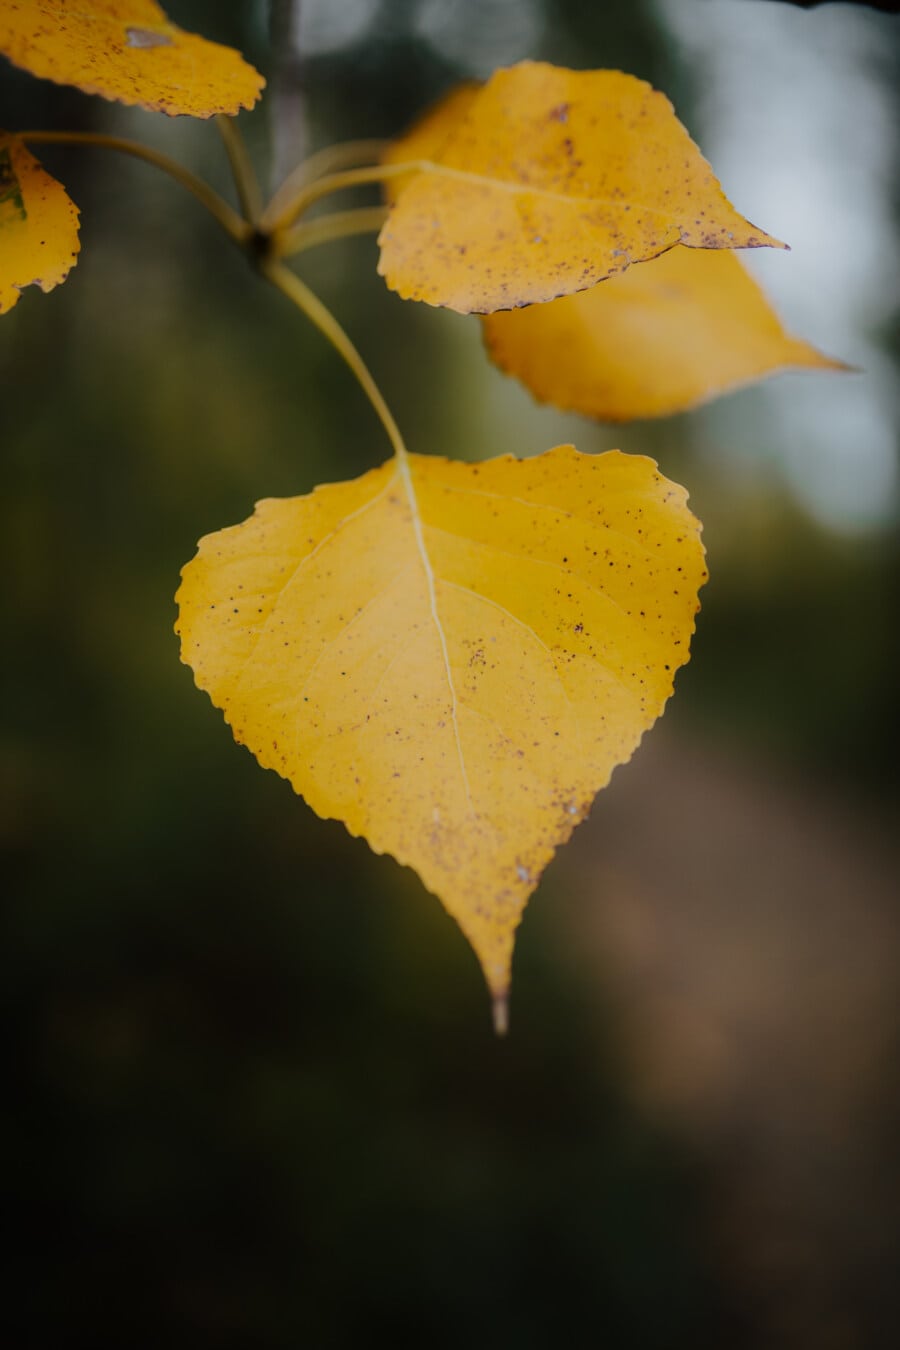 żółty, Żółte liście, żółtawo-brązowy, gałązka, fokus, szczegół, zbliżenie, sezon jesień, natura, jesień